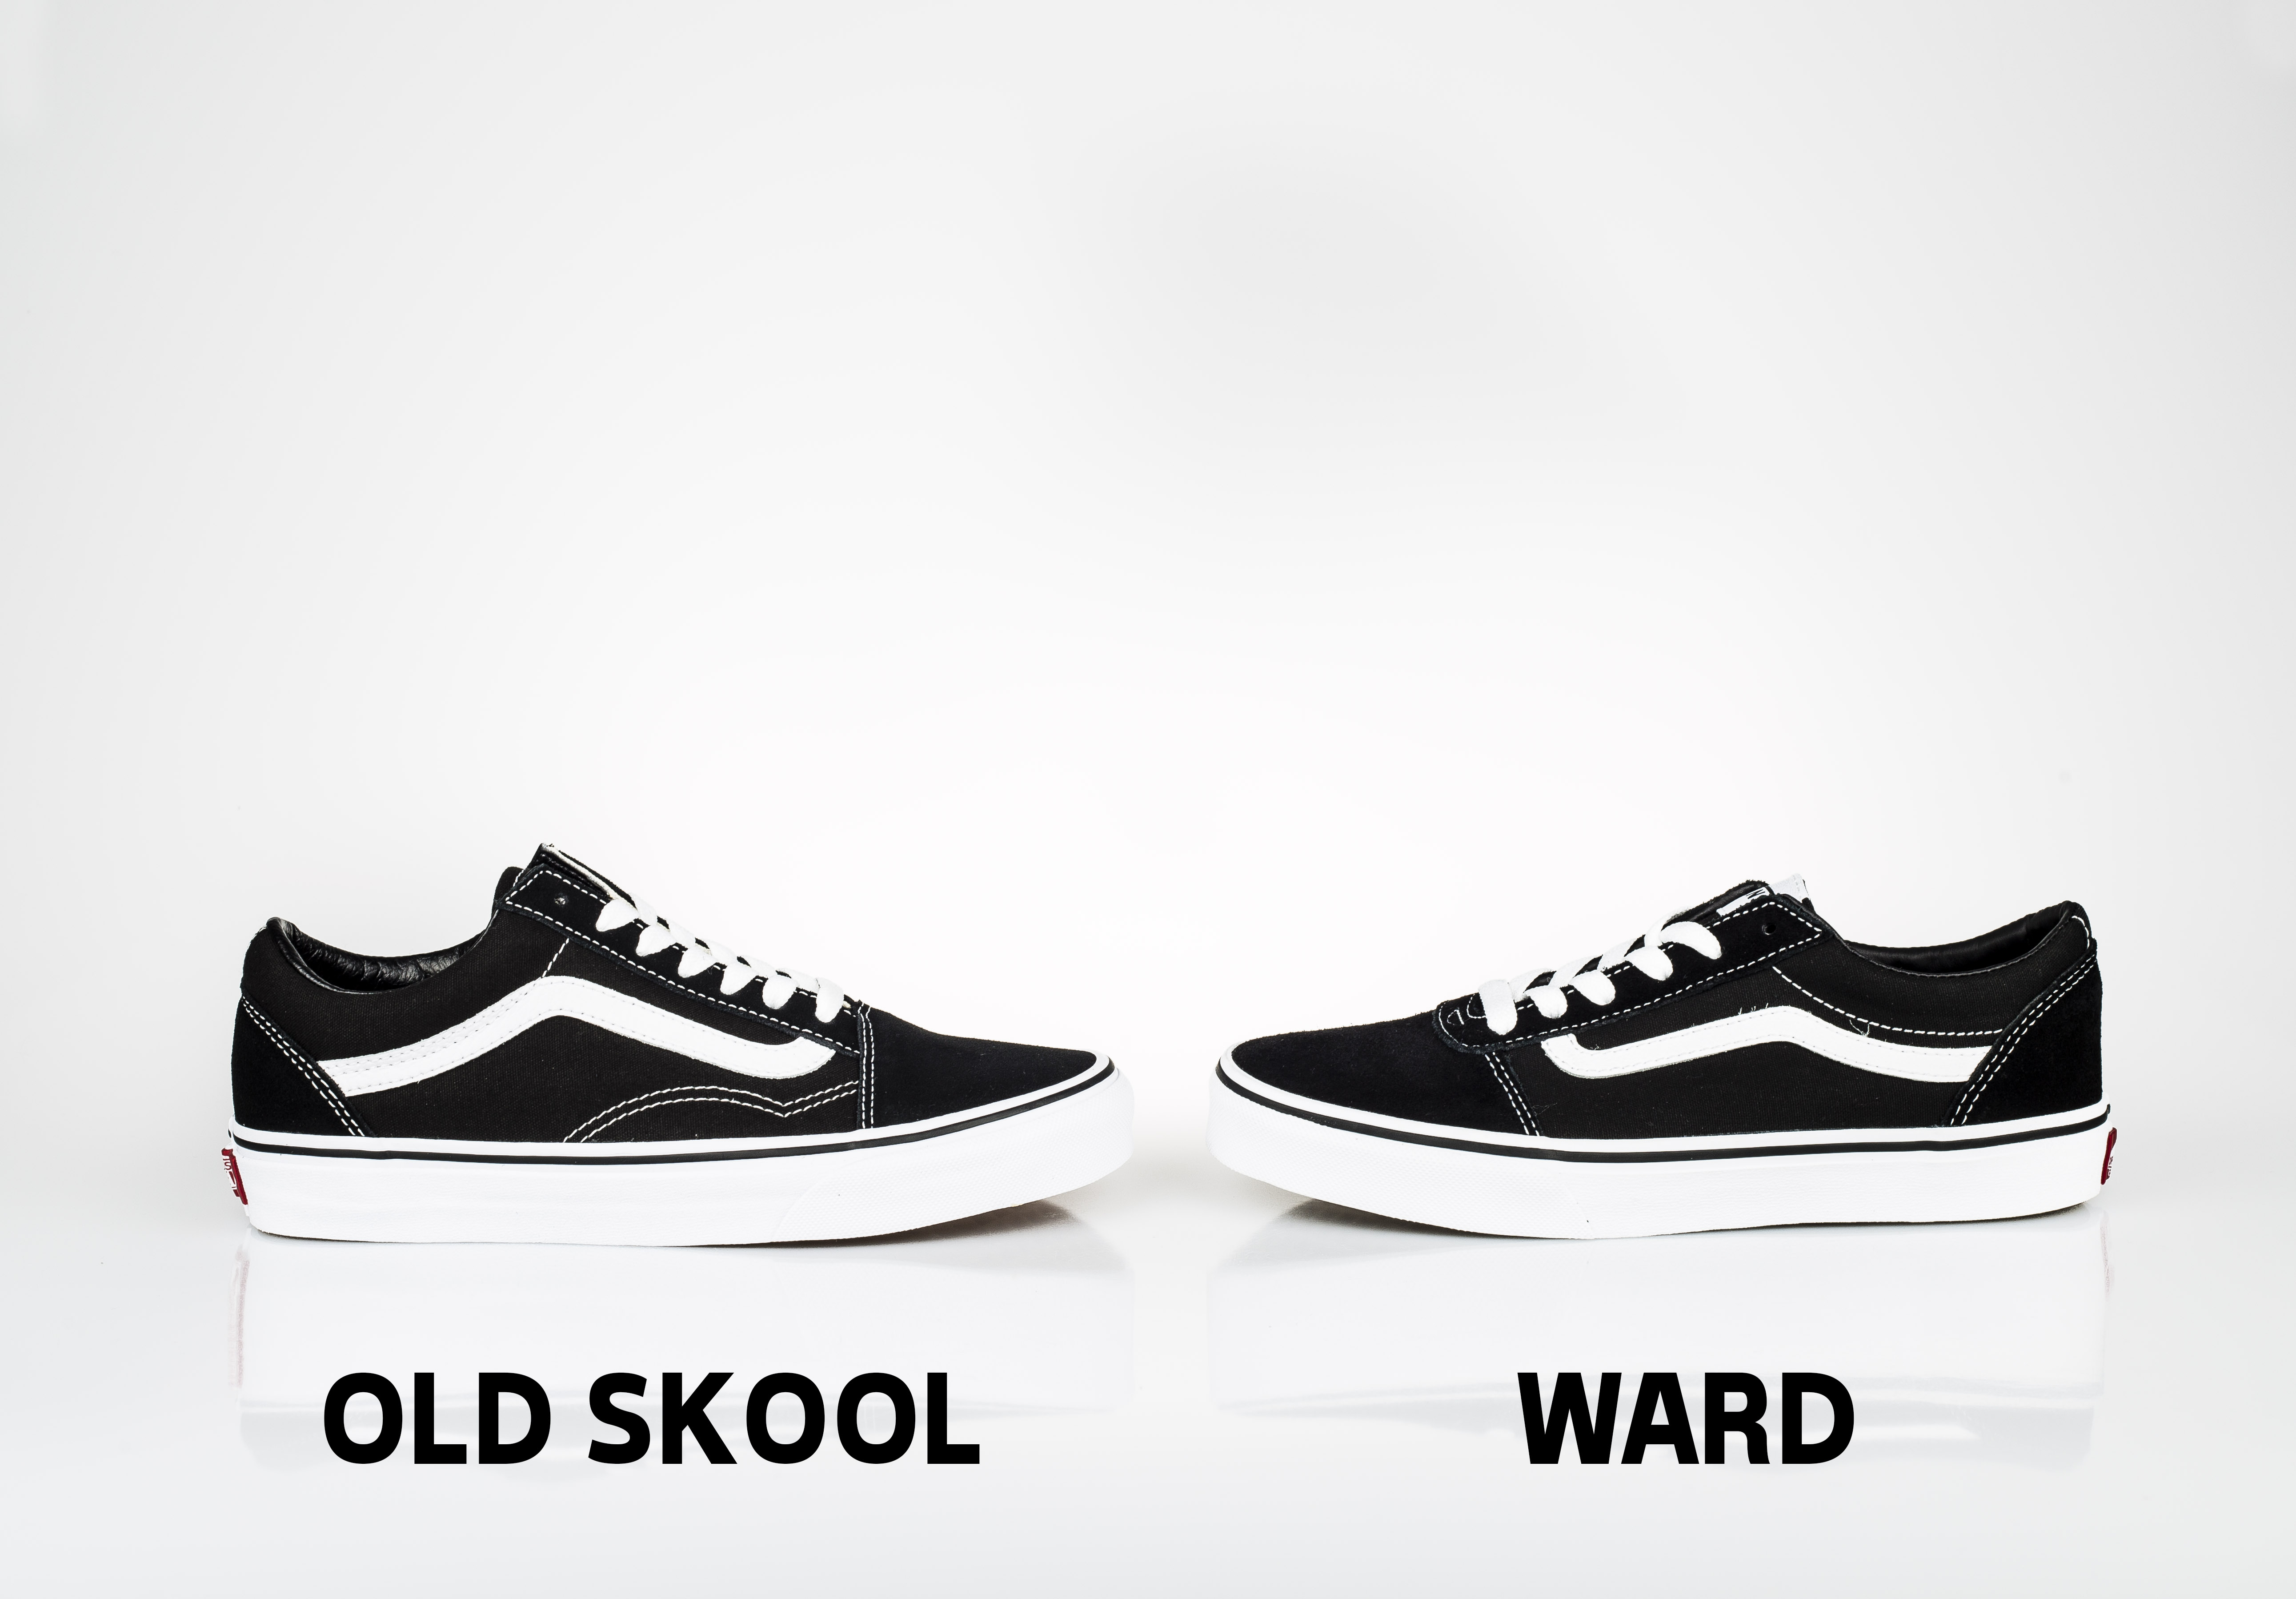 ward old skool